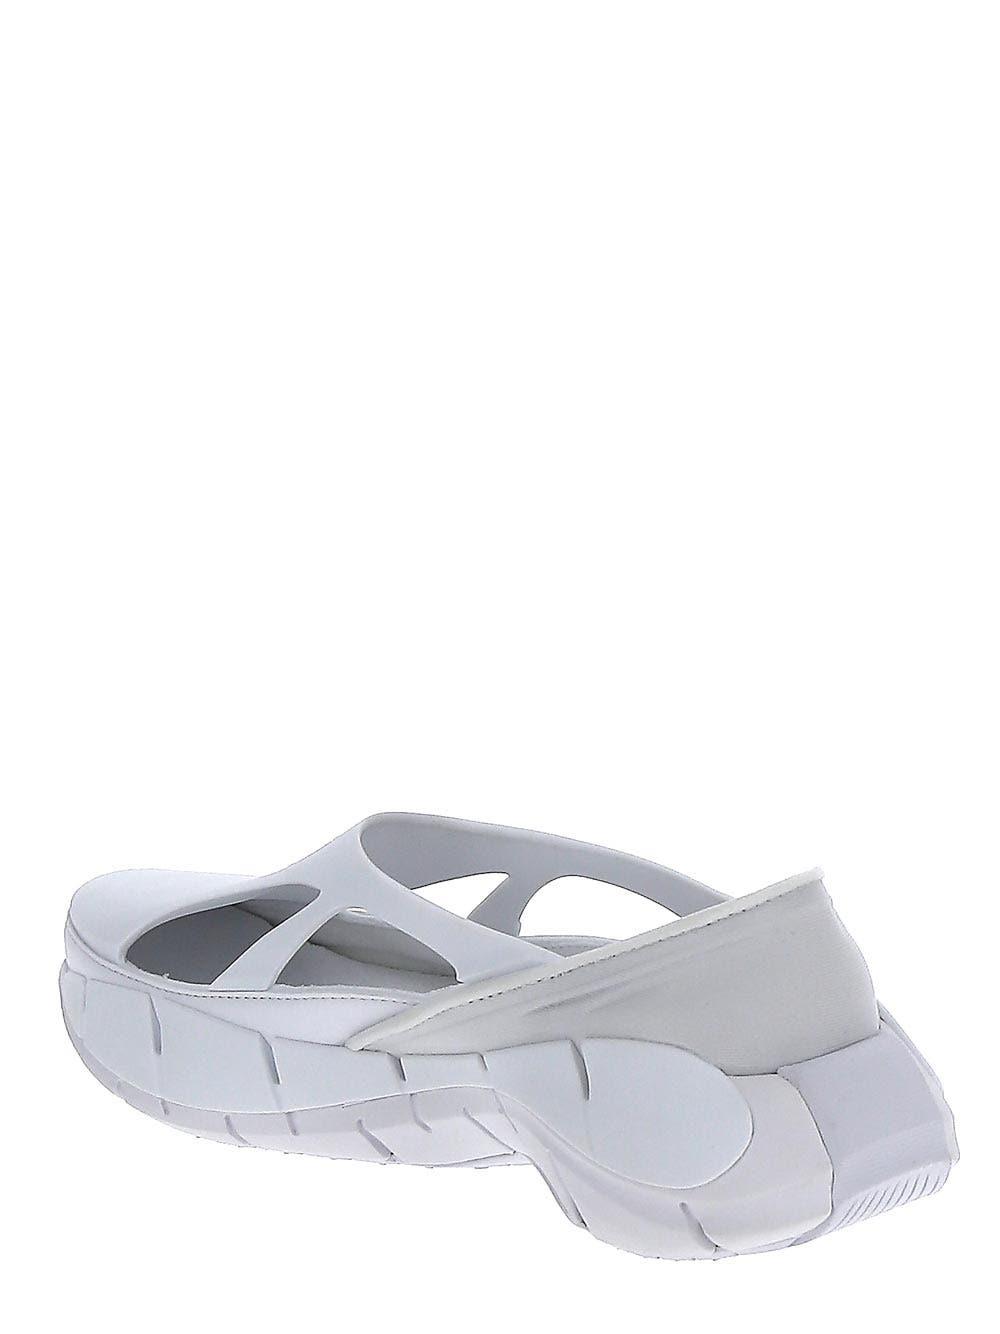 Reebok X Maison Margiela Rubber Project 0 Cr Sneakers in White | Lyst